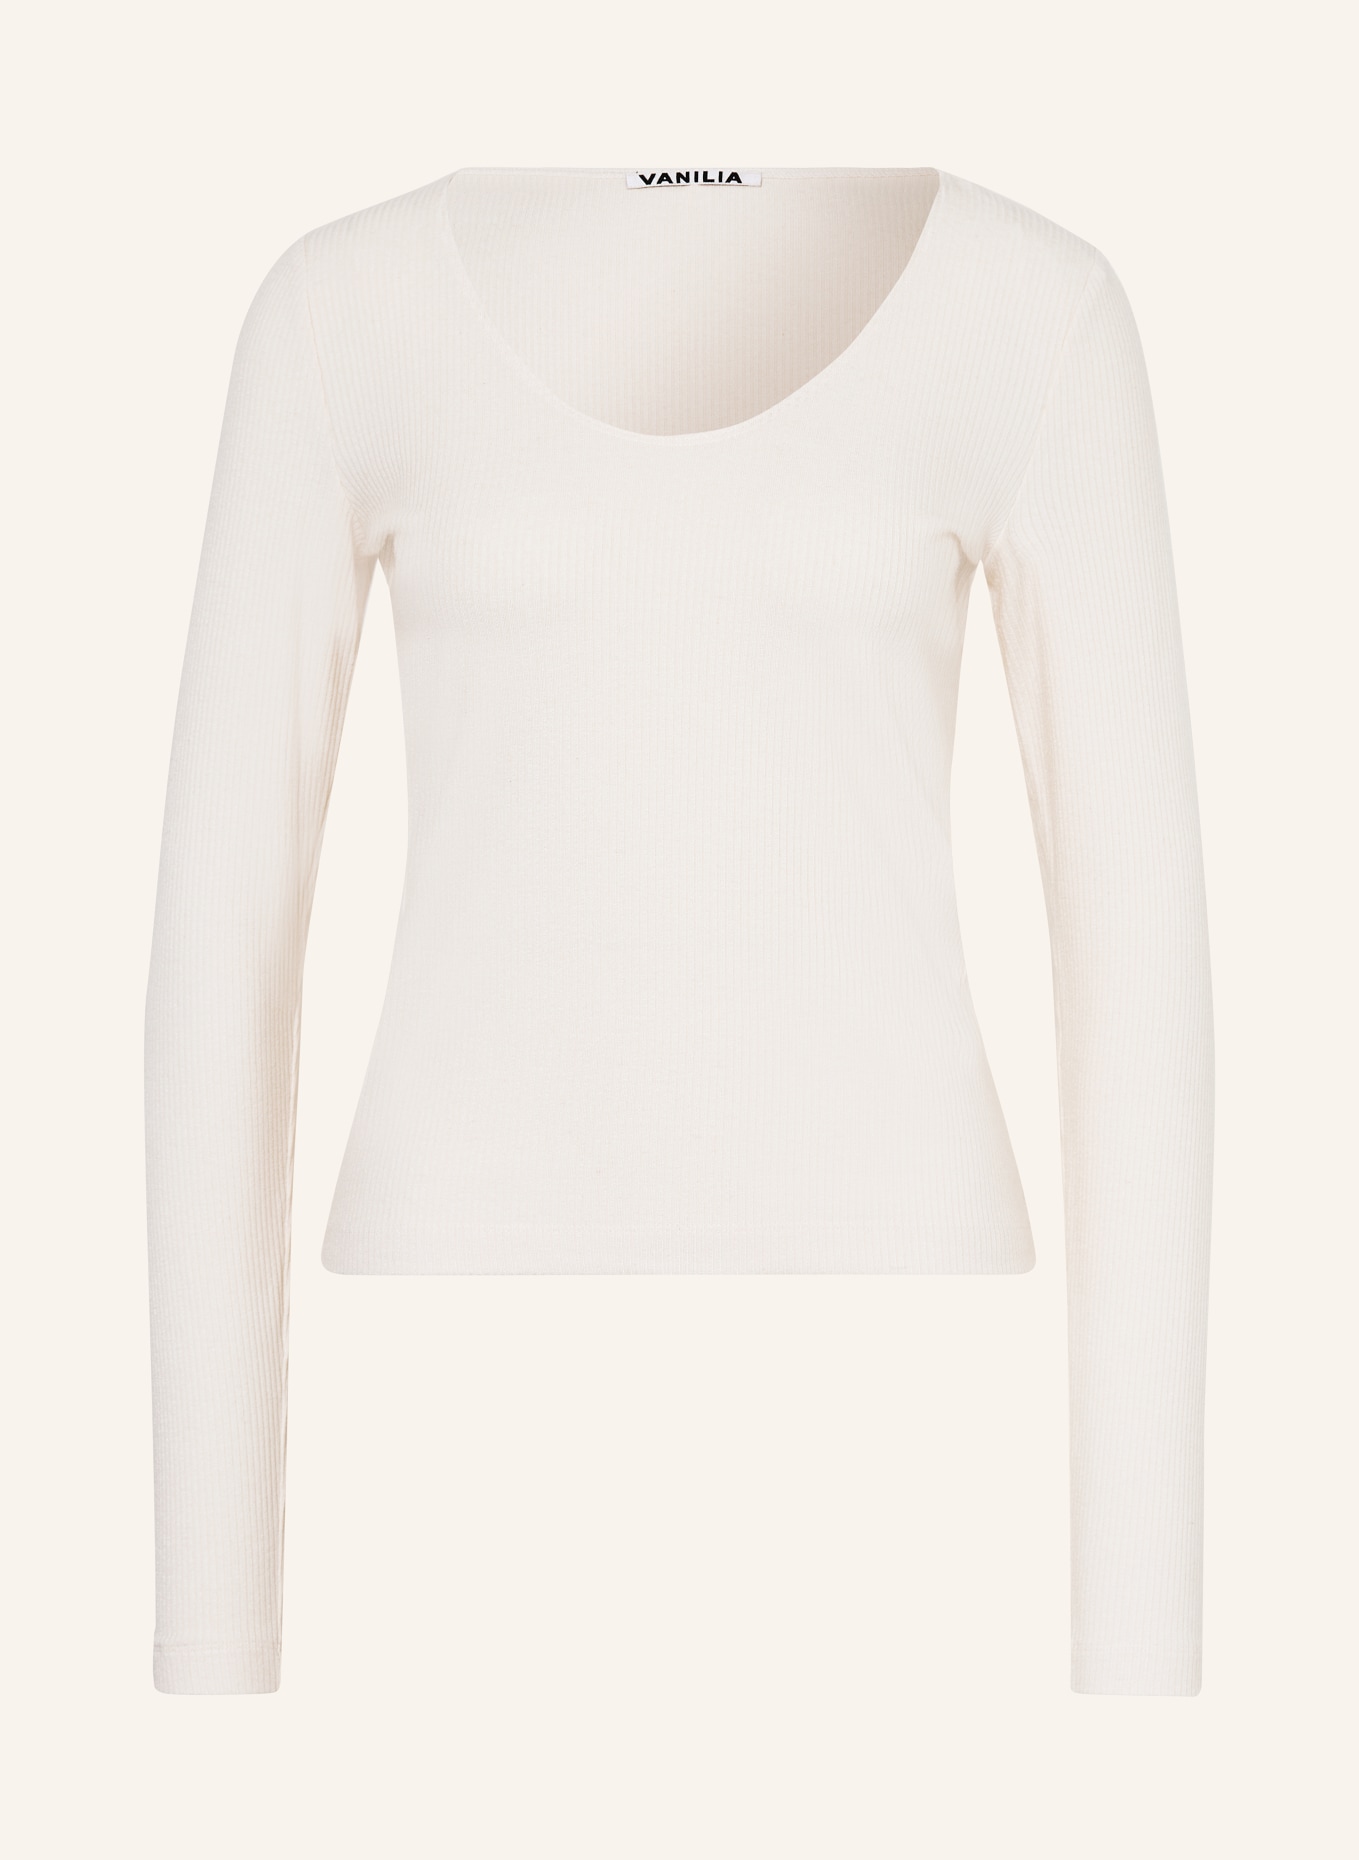 VANILIA Sweater, Color: ECRU (Image 1)